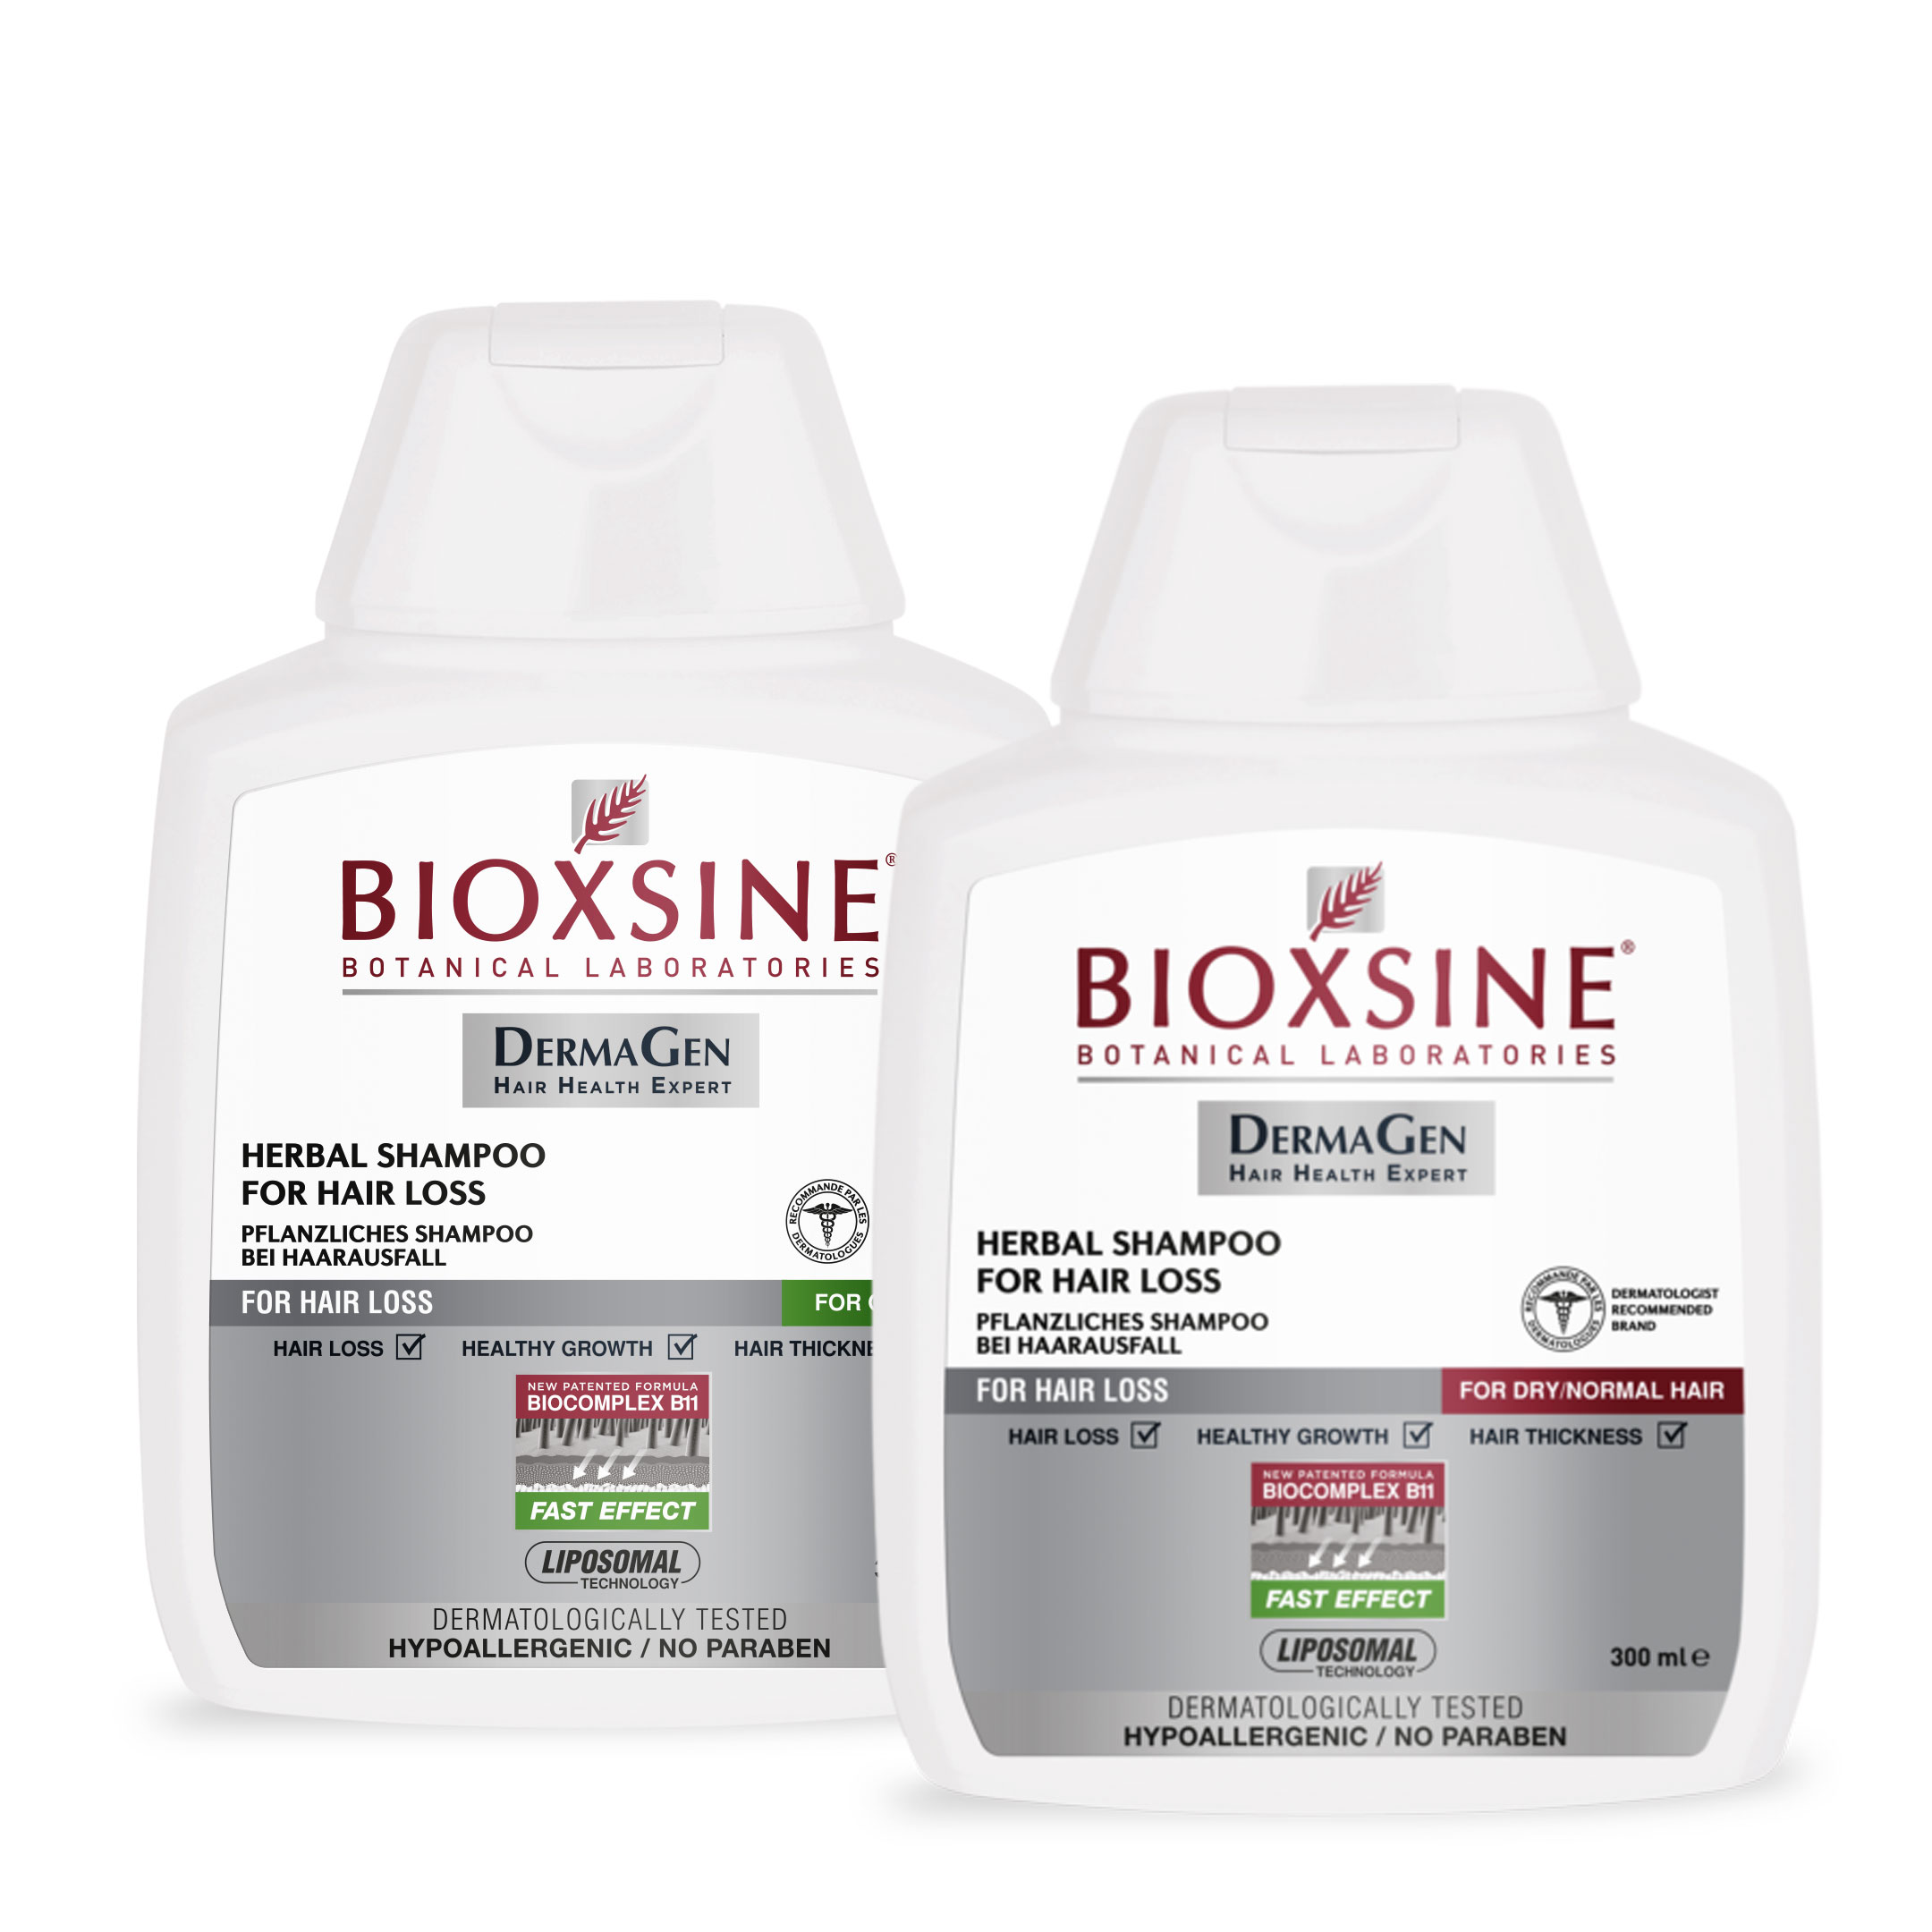 bioxsine dermagen forte szampon przeciw wypadaniu włosów